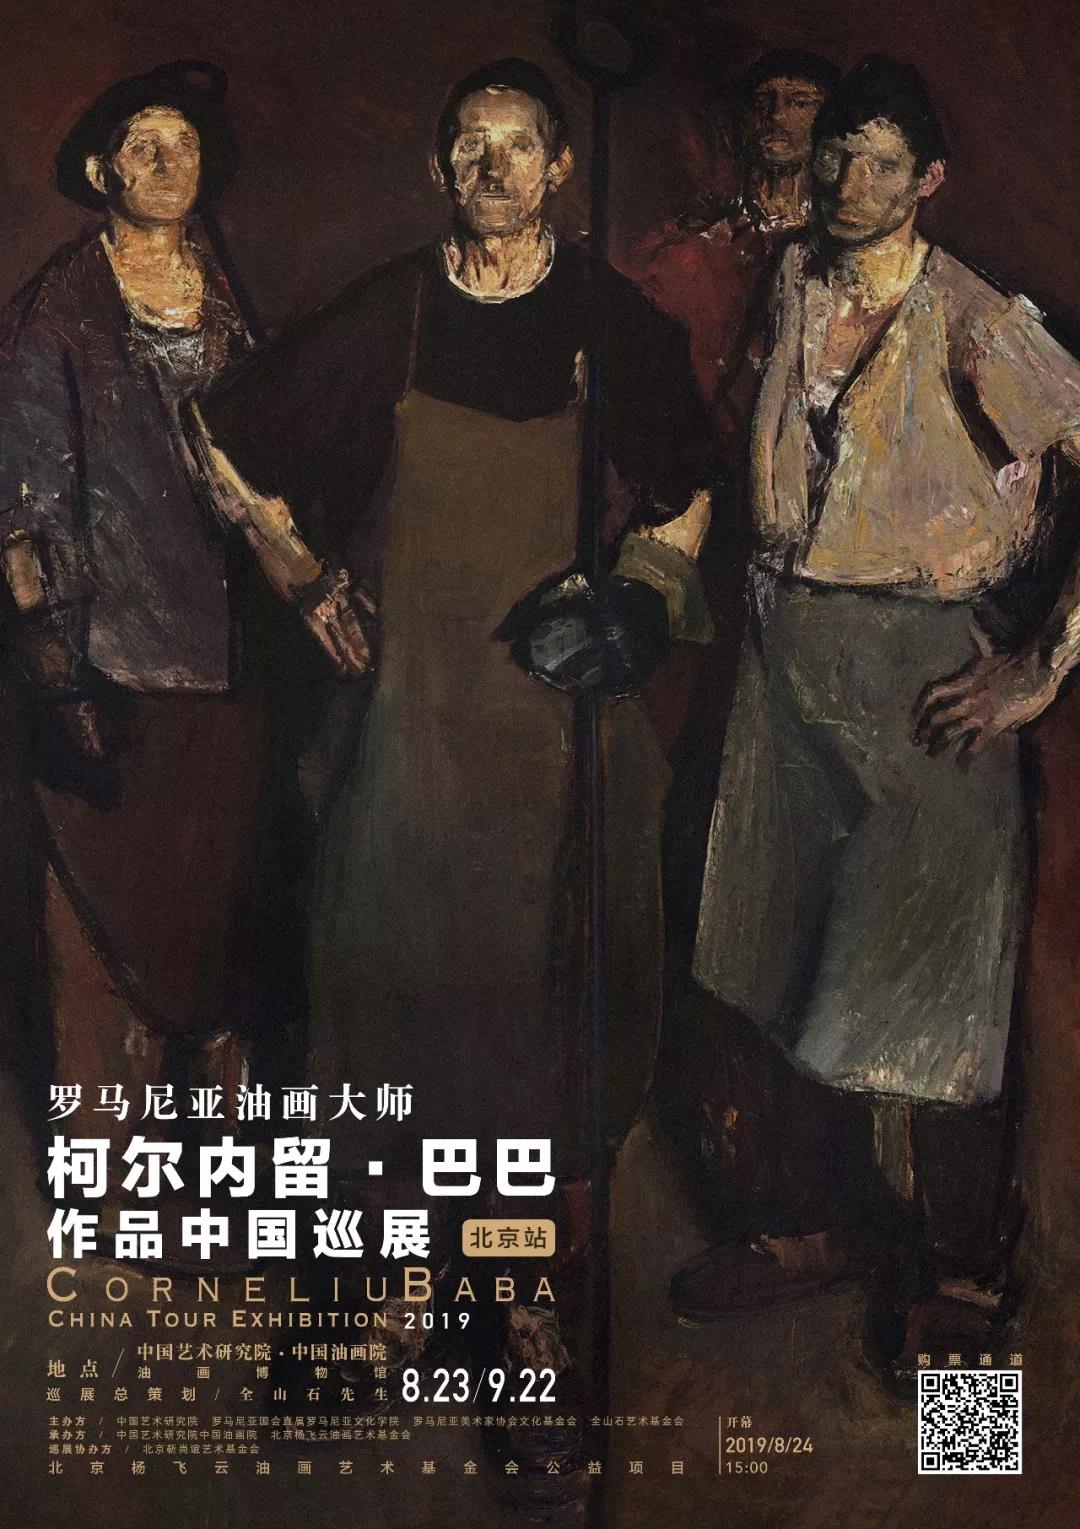 罗马尼亚油画大师柯尔内留·巴巴作品中国巡展——北京站